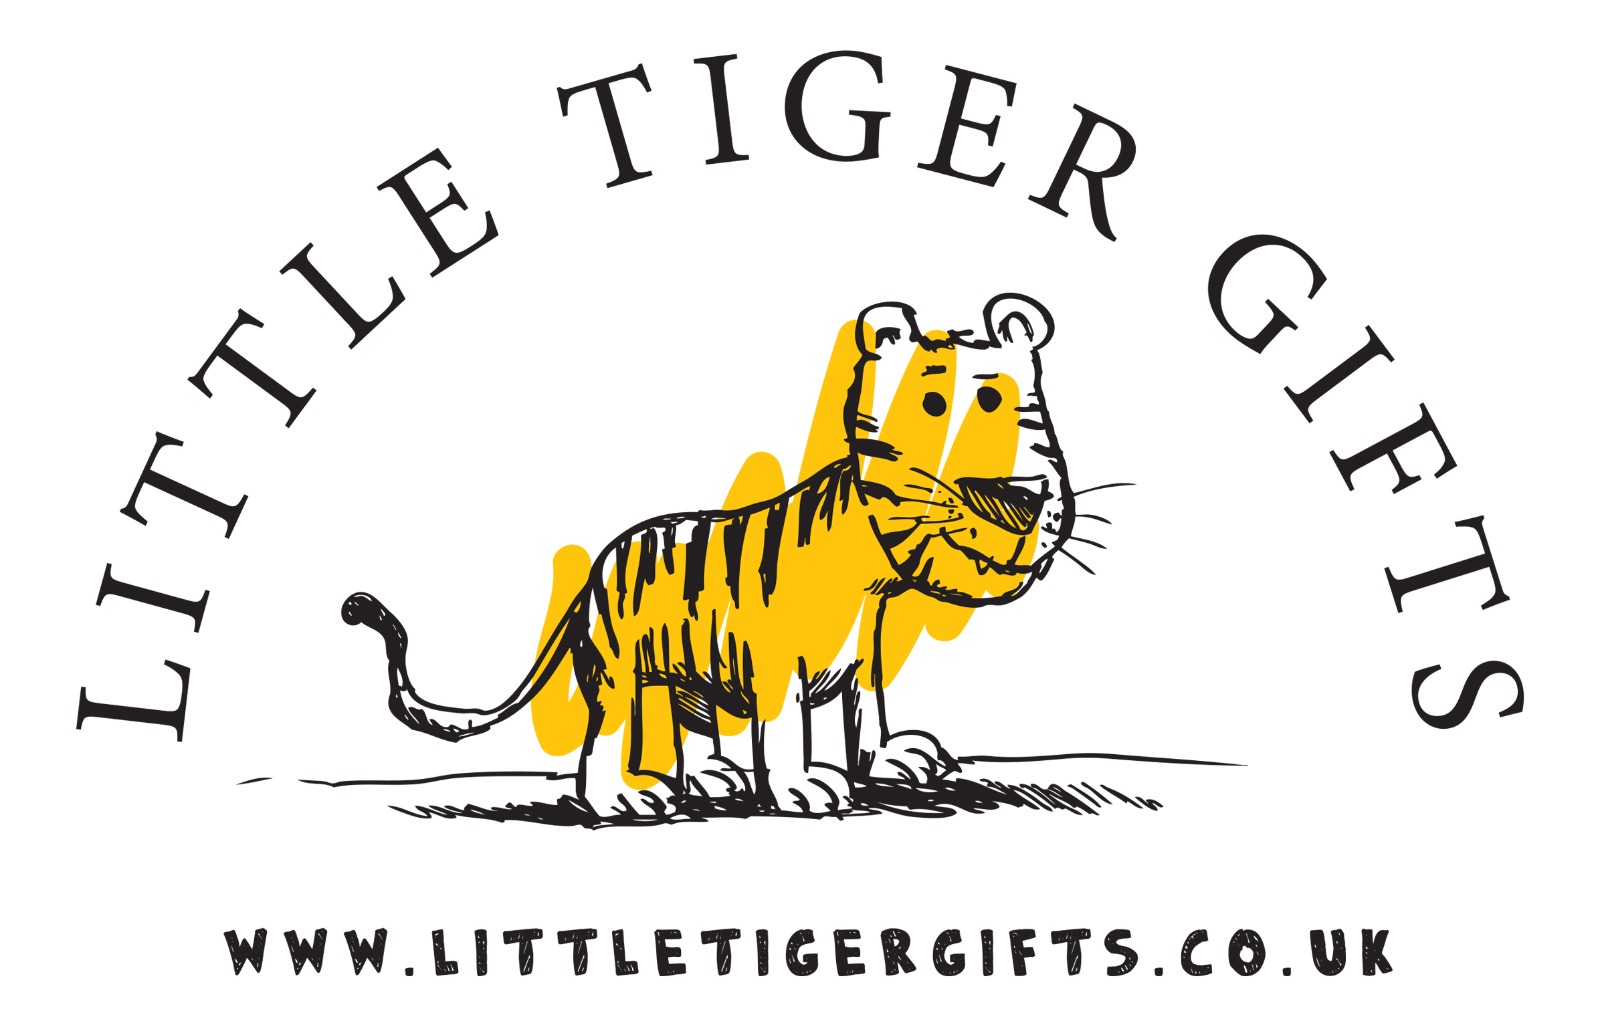 www.littletigergifts.co.uk